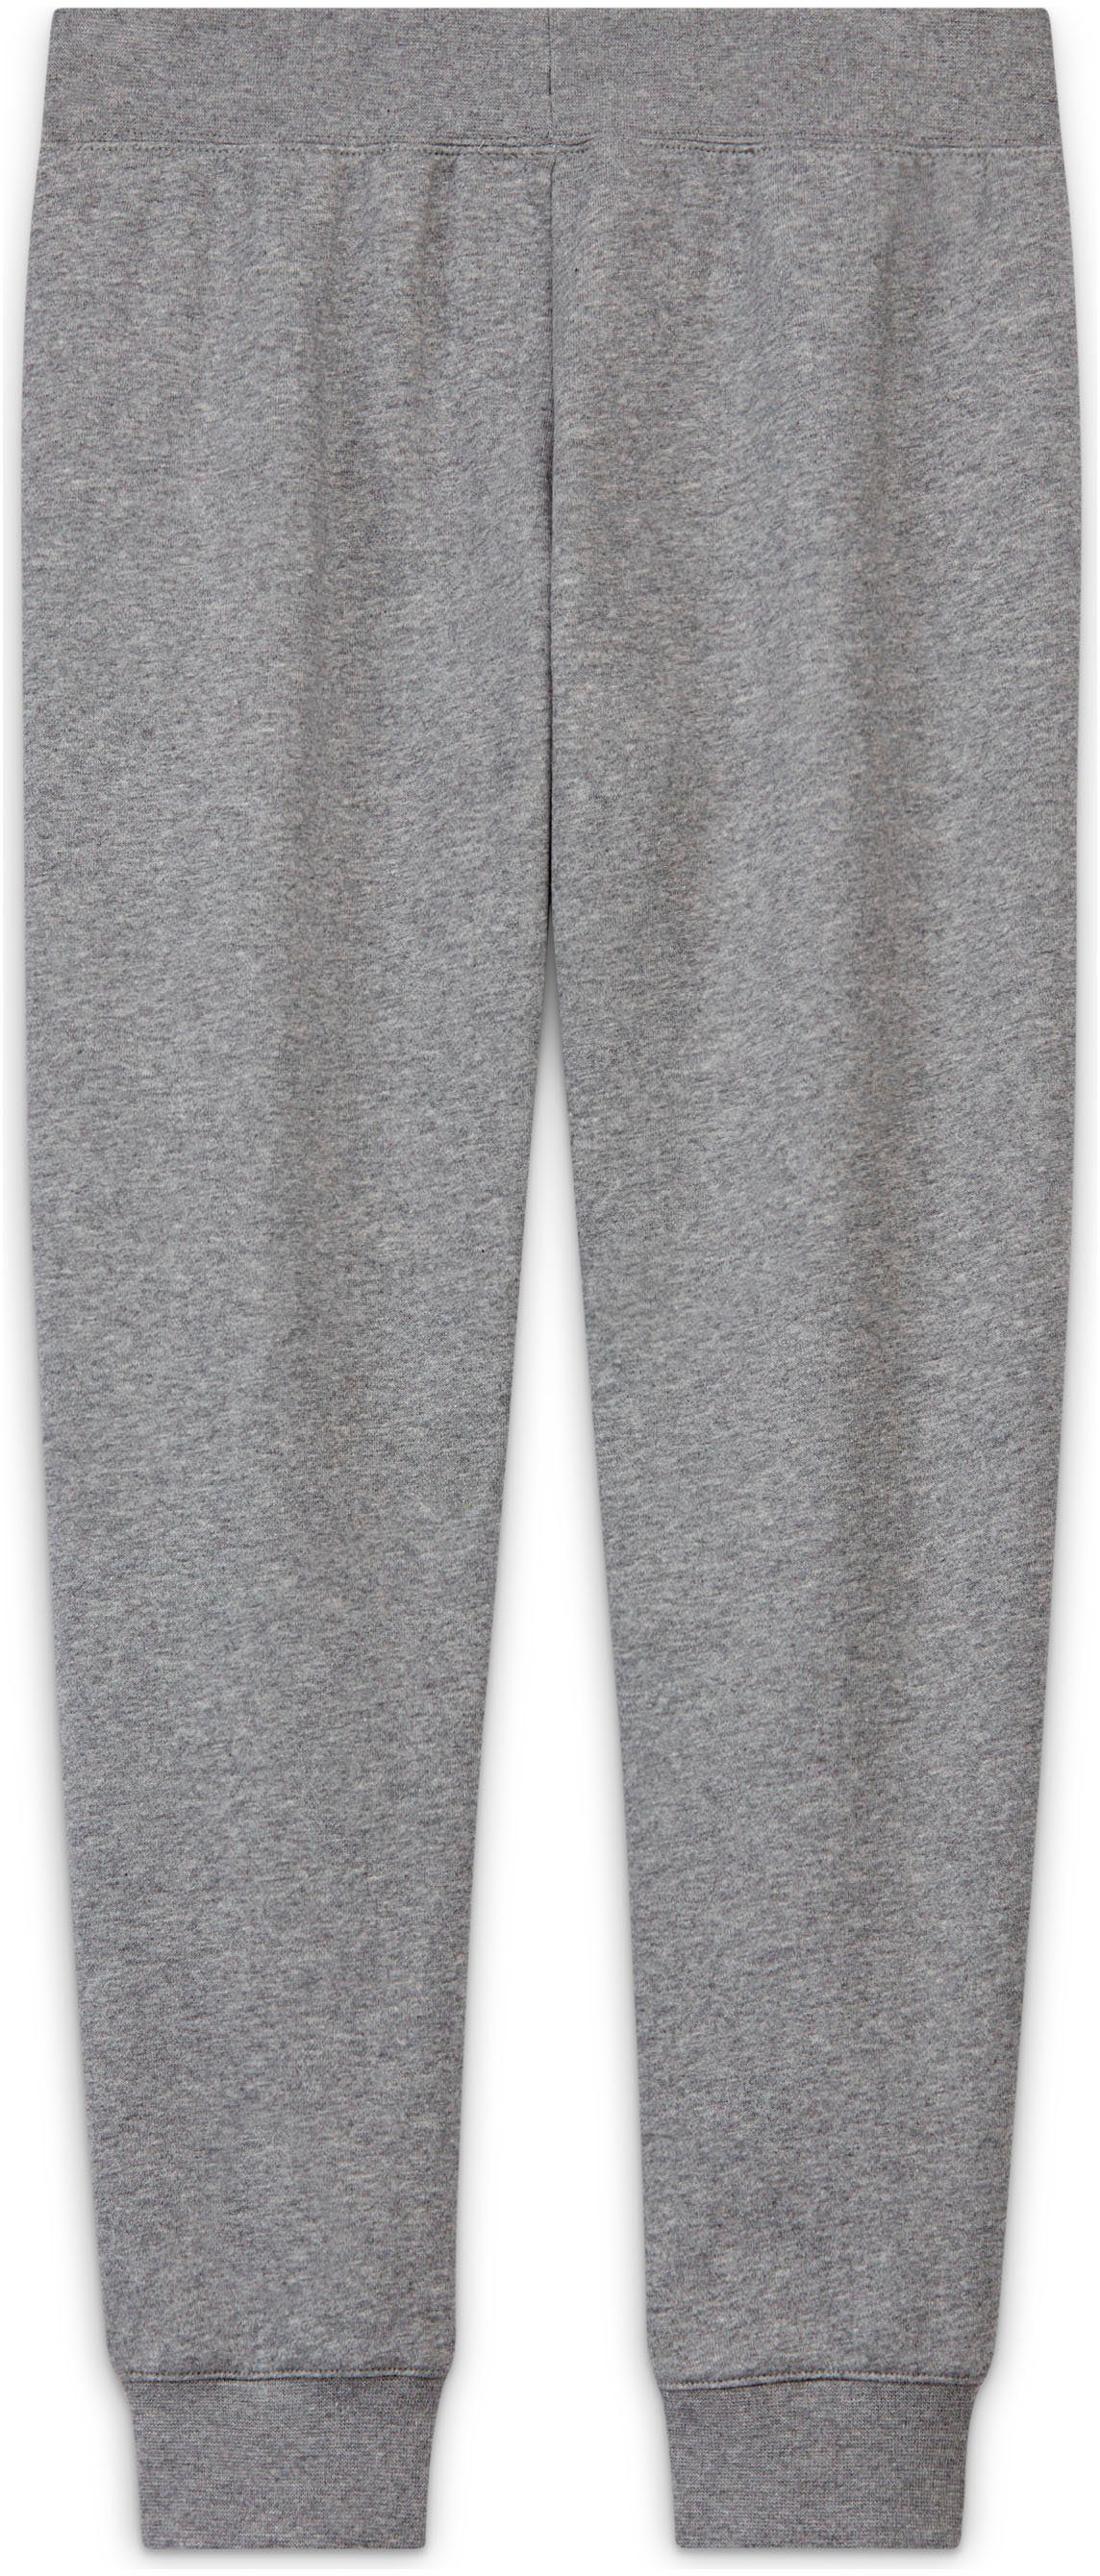 (Girls) Jogginghose Club grau-meliert Fleece Nike Big Sportswear Pants Kids'